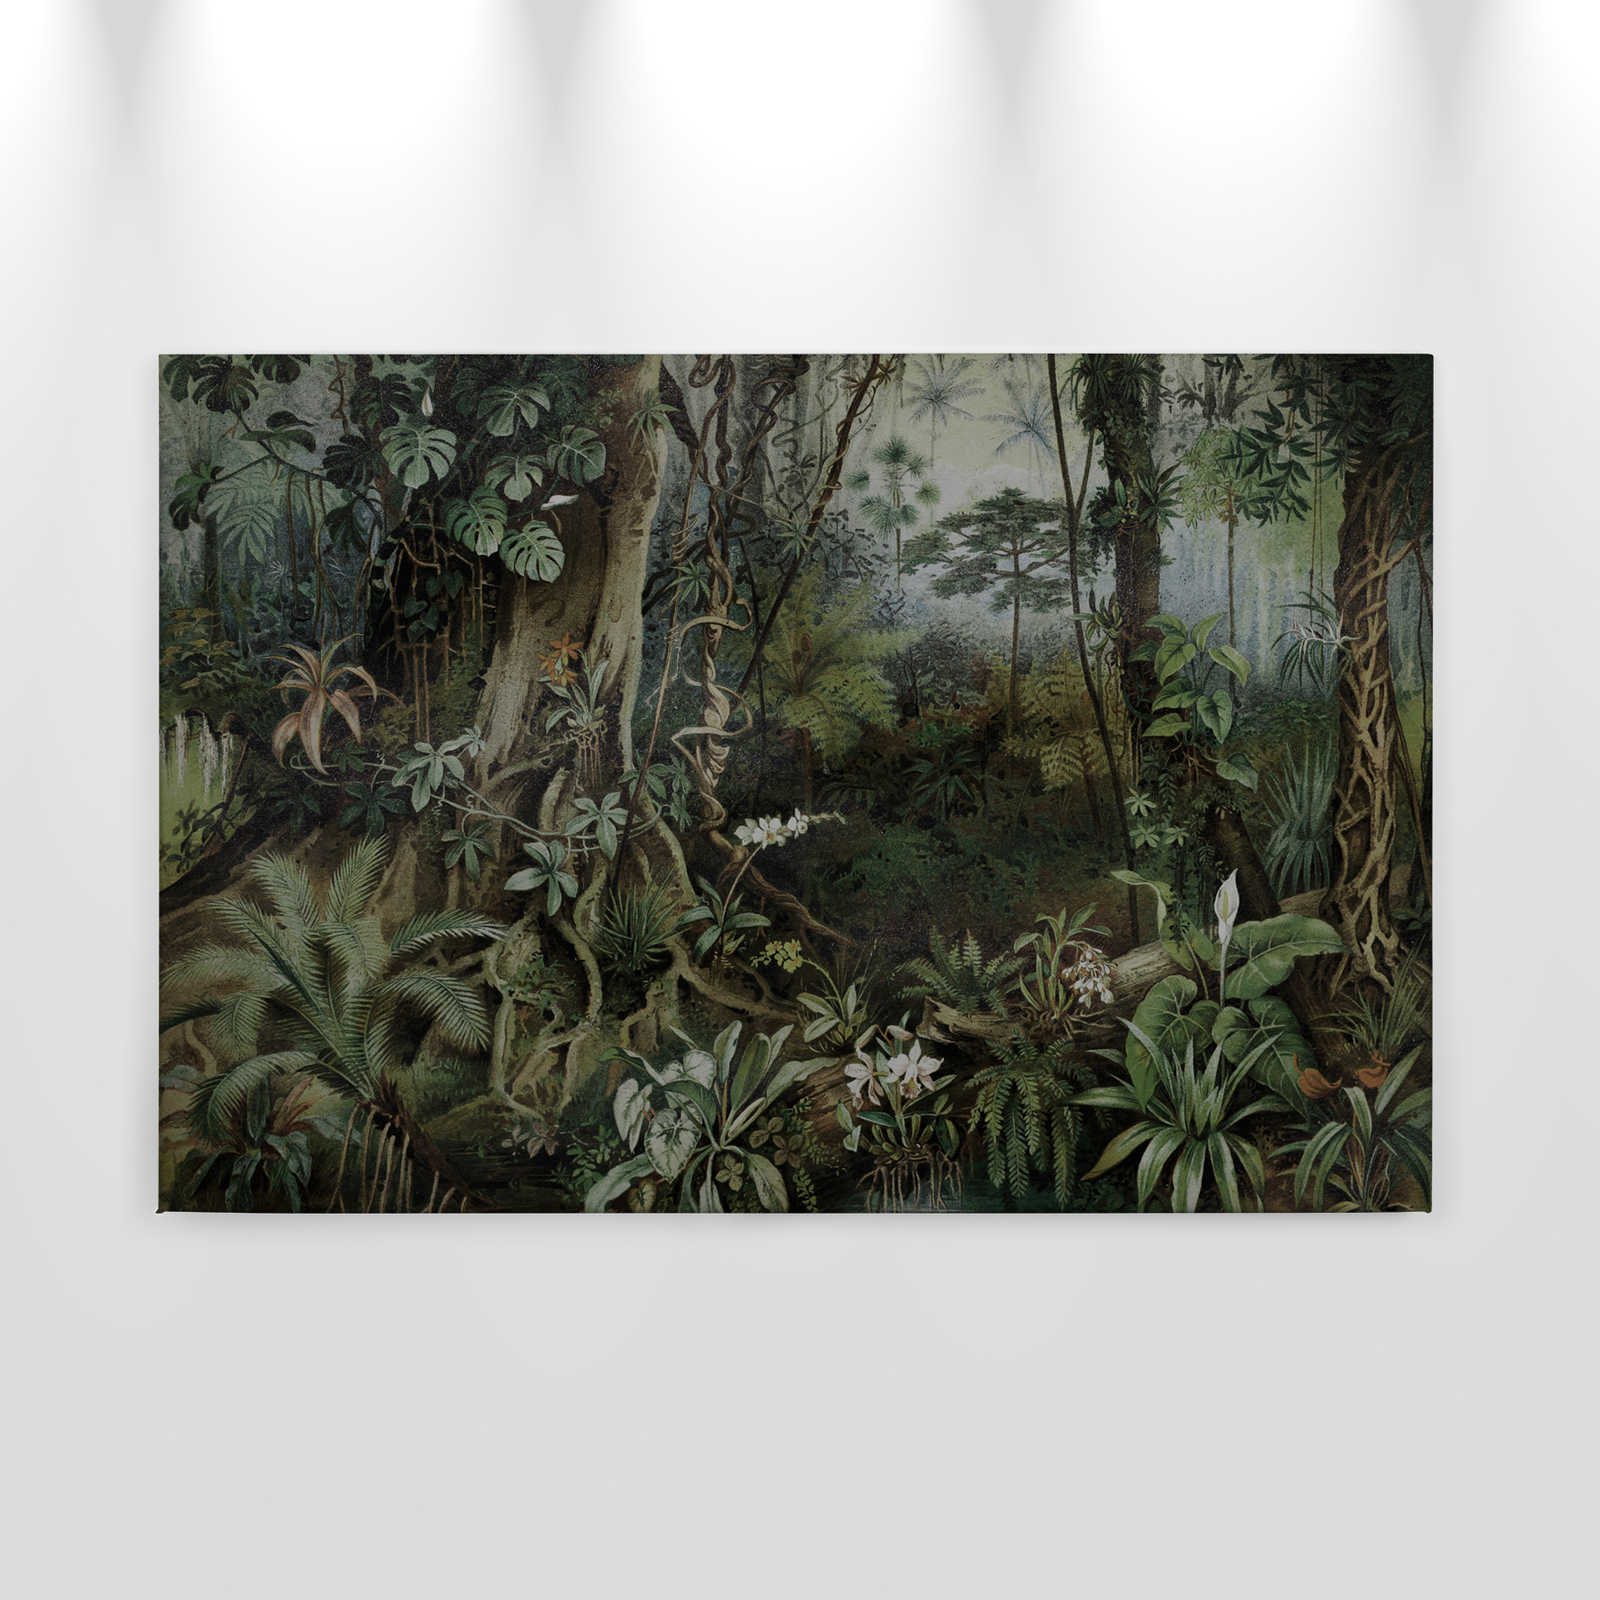             Dschungel Leinwandbild im Zeichenstil | walls by patel – 0,90 m x 0,60 m
        